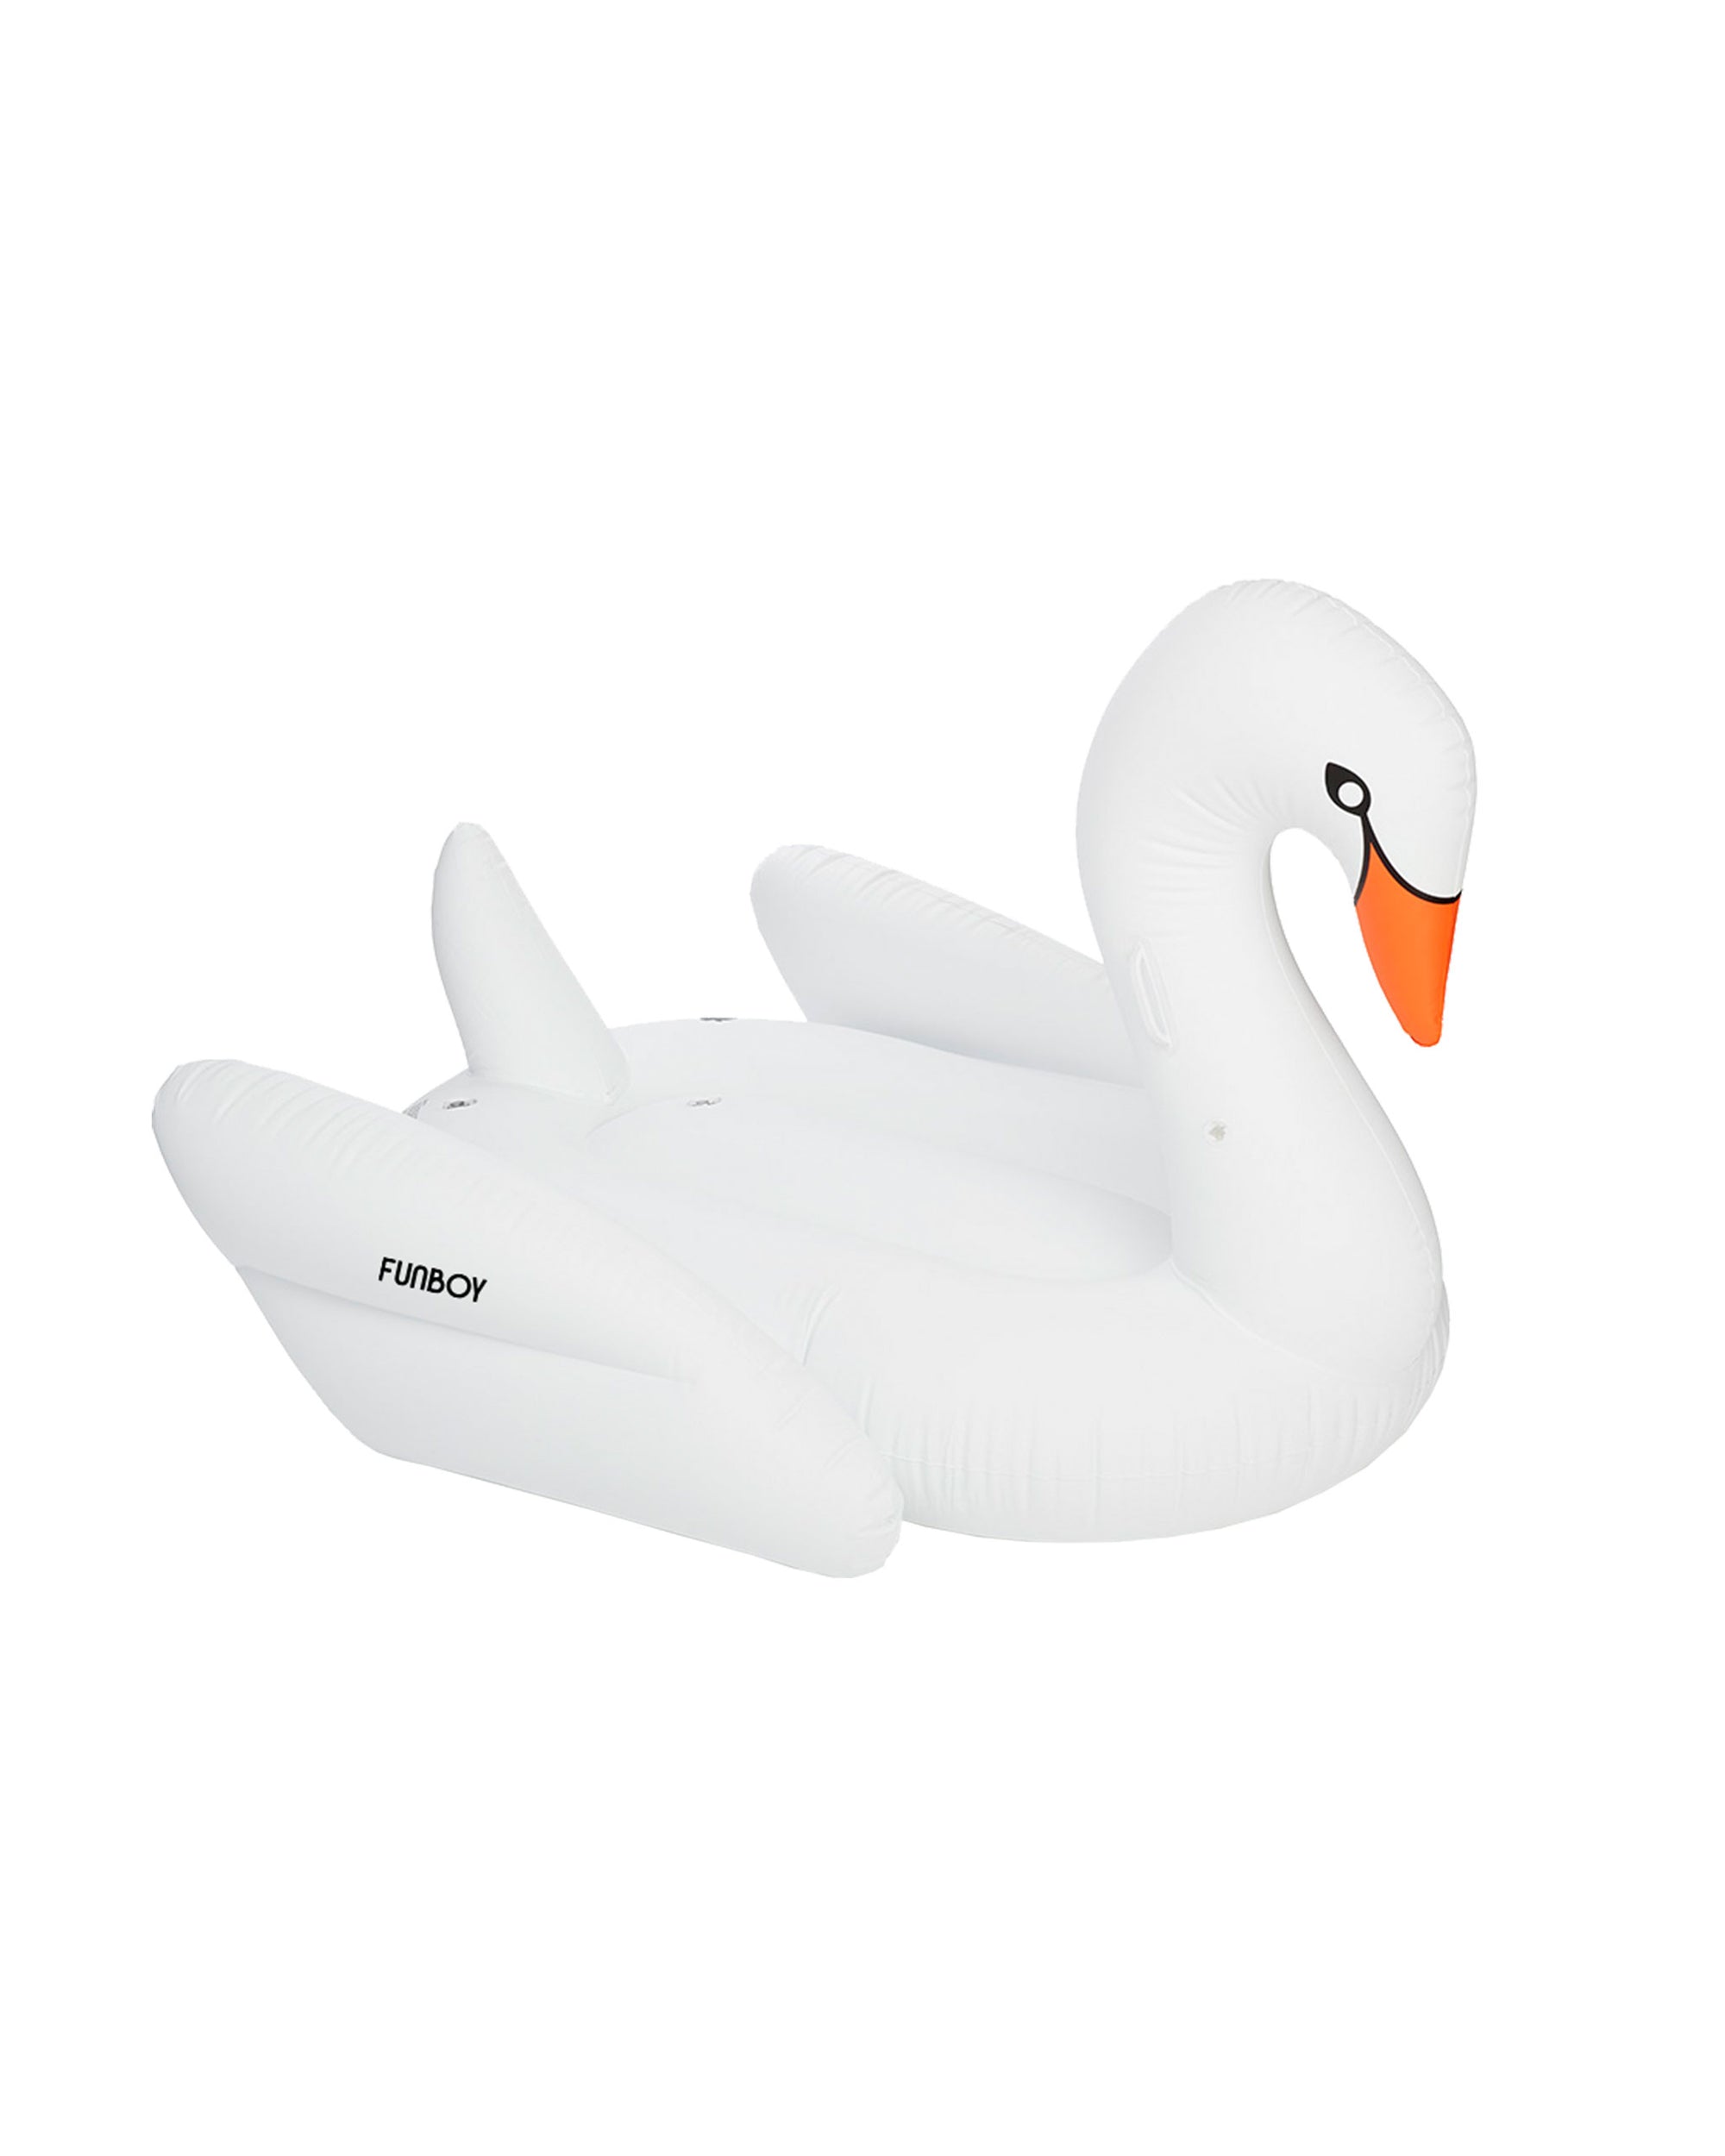 Variant Swan Pool Float